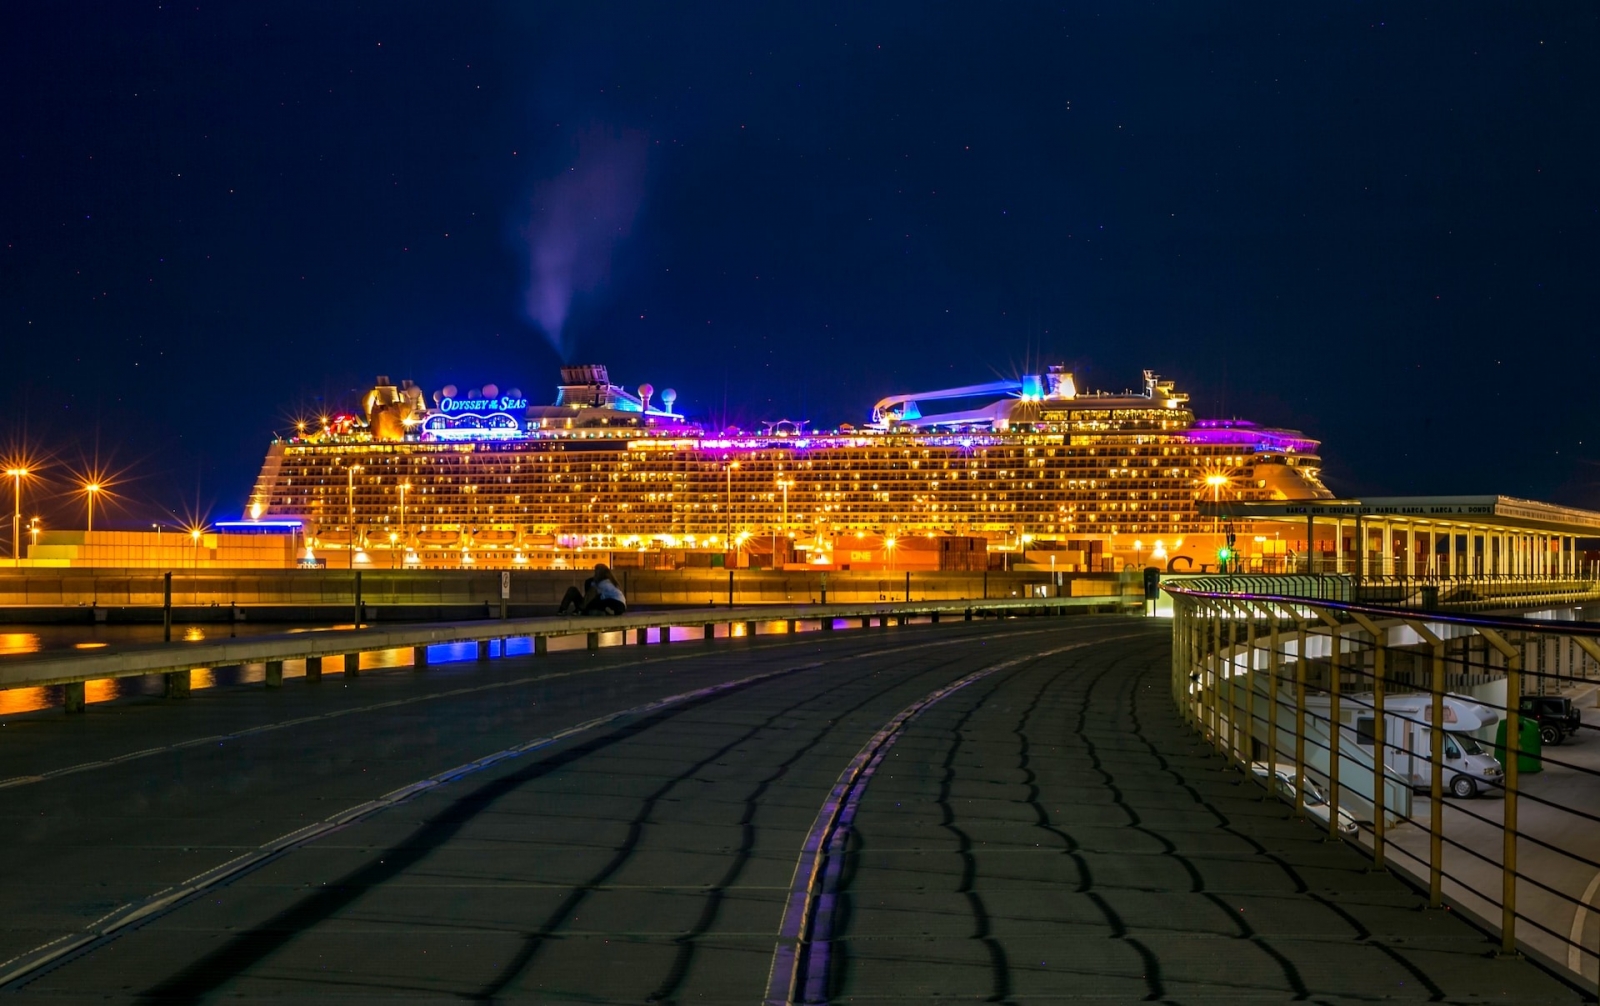 En la vibrante ciudad portuaria de Valencia, un colosal crucero domina el horizonte nocturno y su fachada iluminada se refleja en las brillantes aguas.